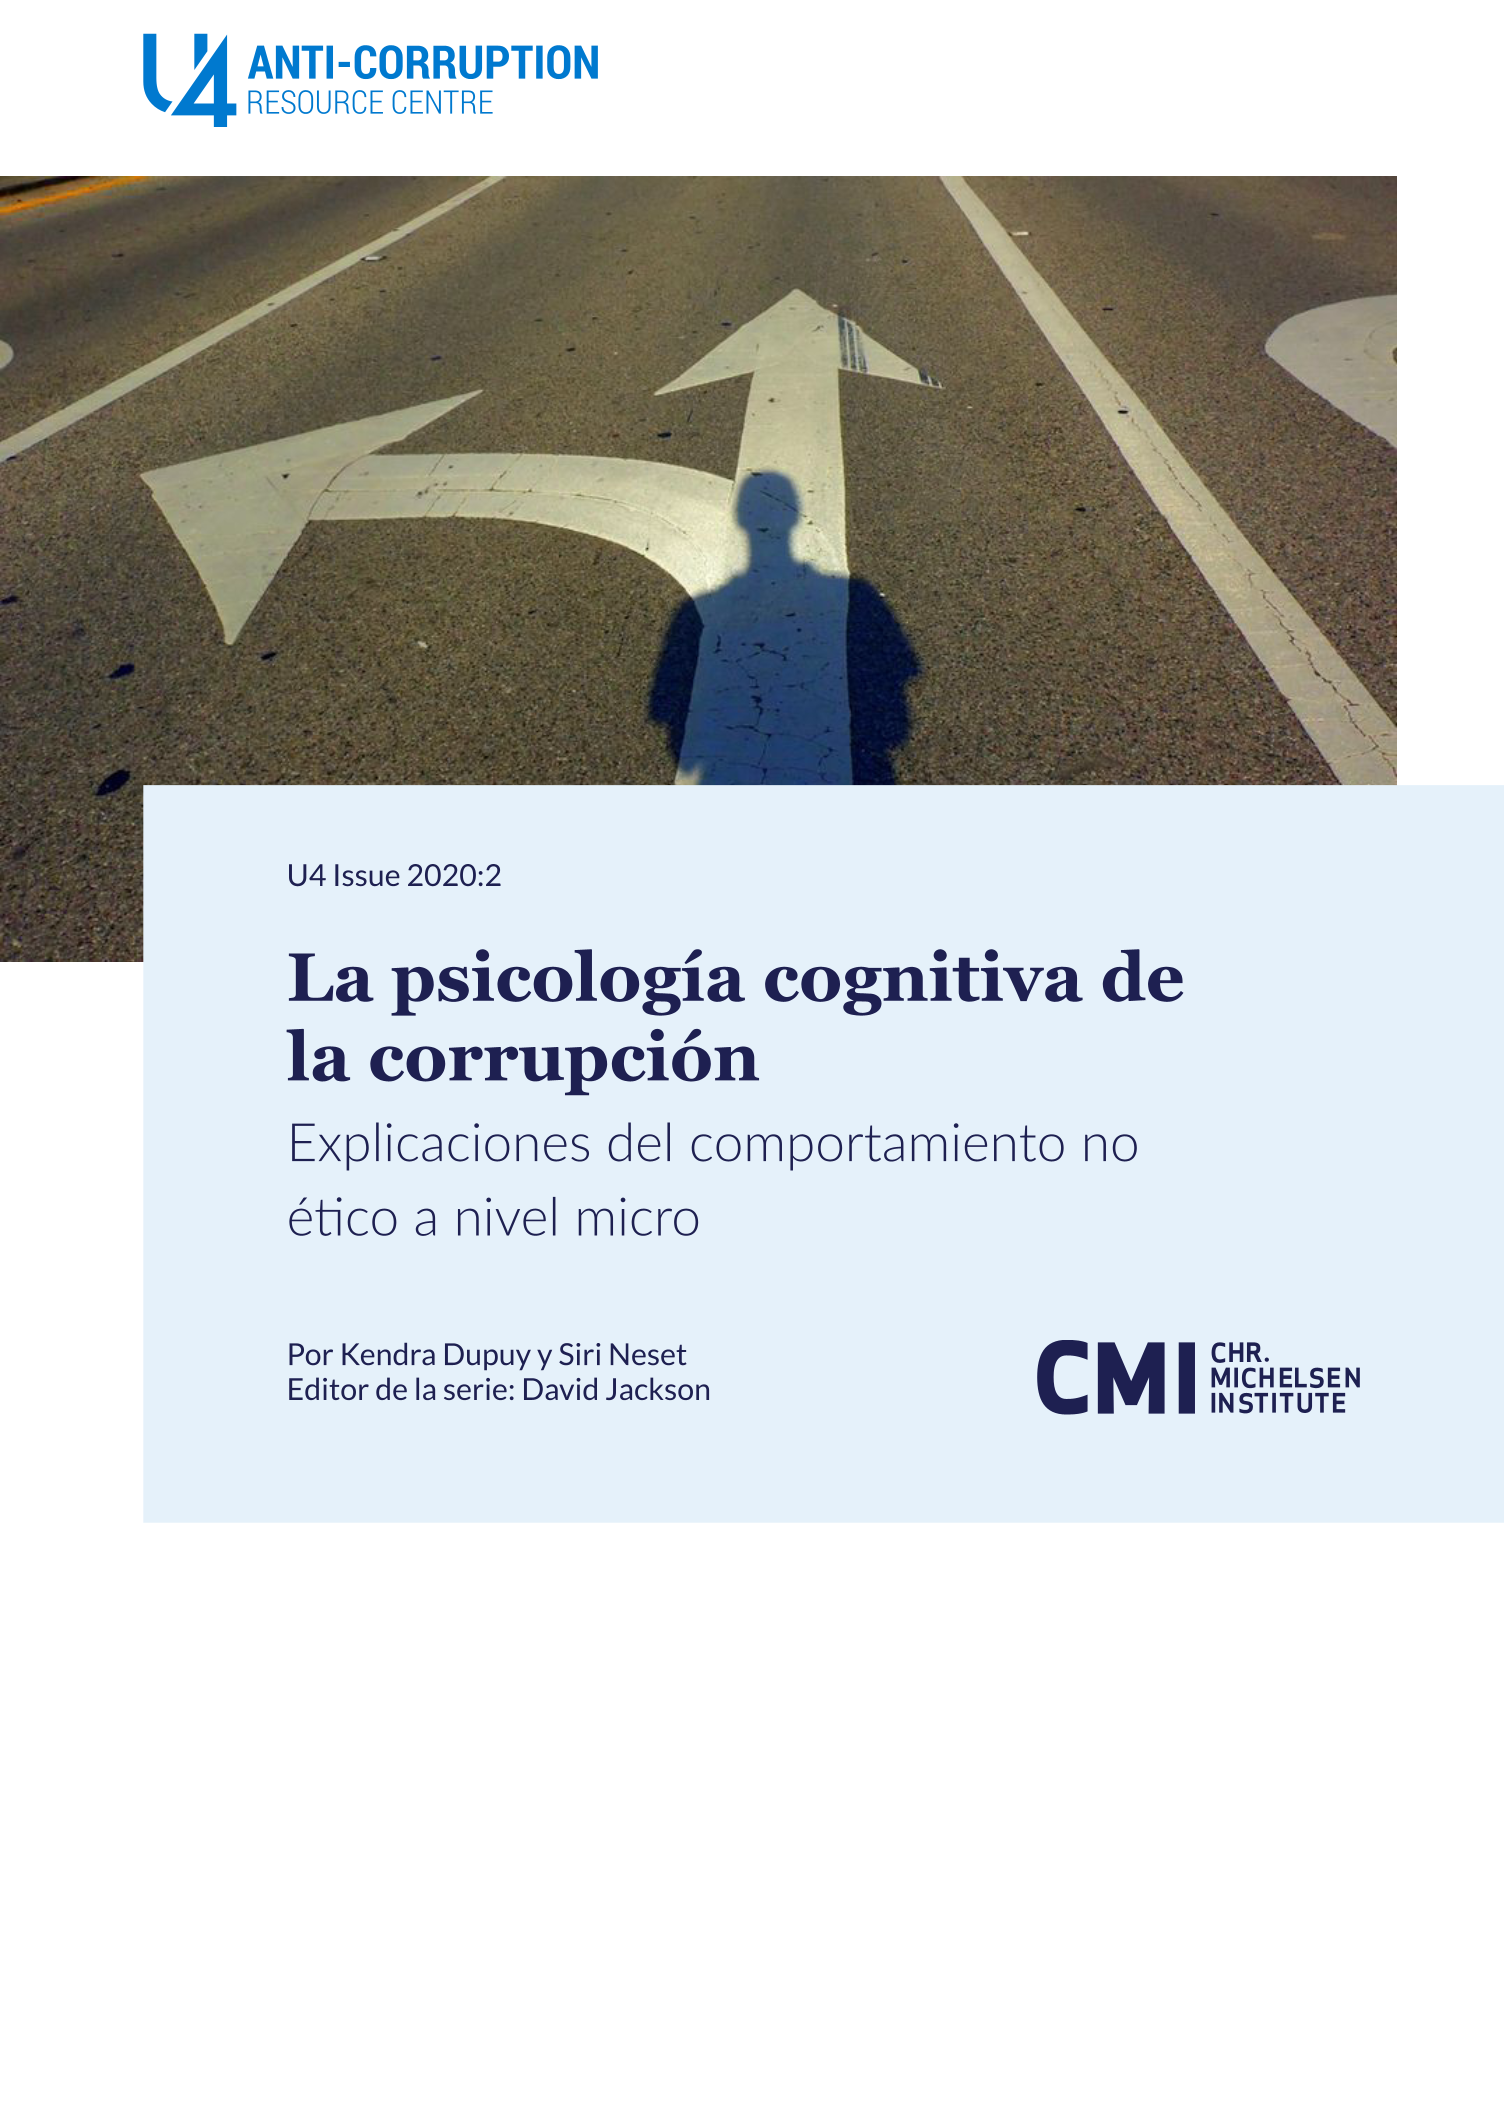 La psicología cognitiva de la corrupción 